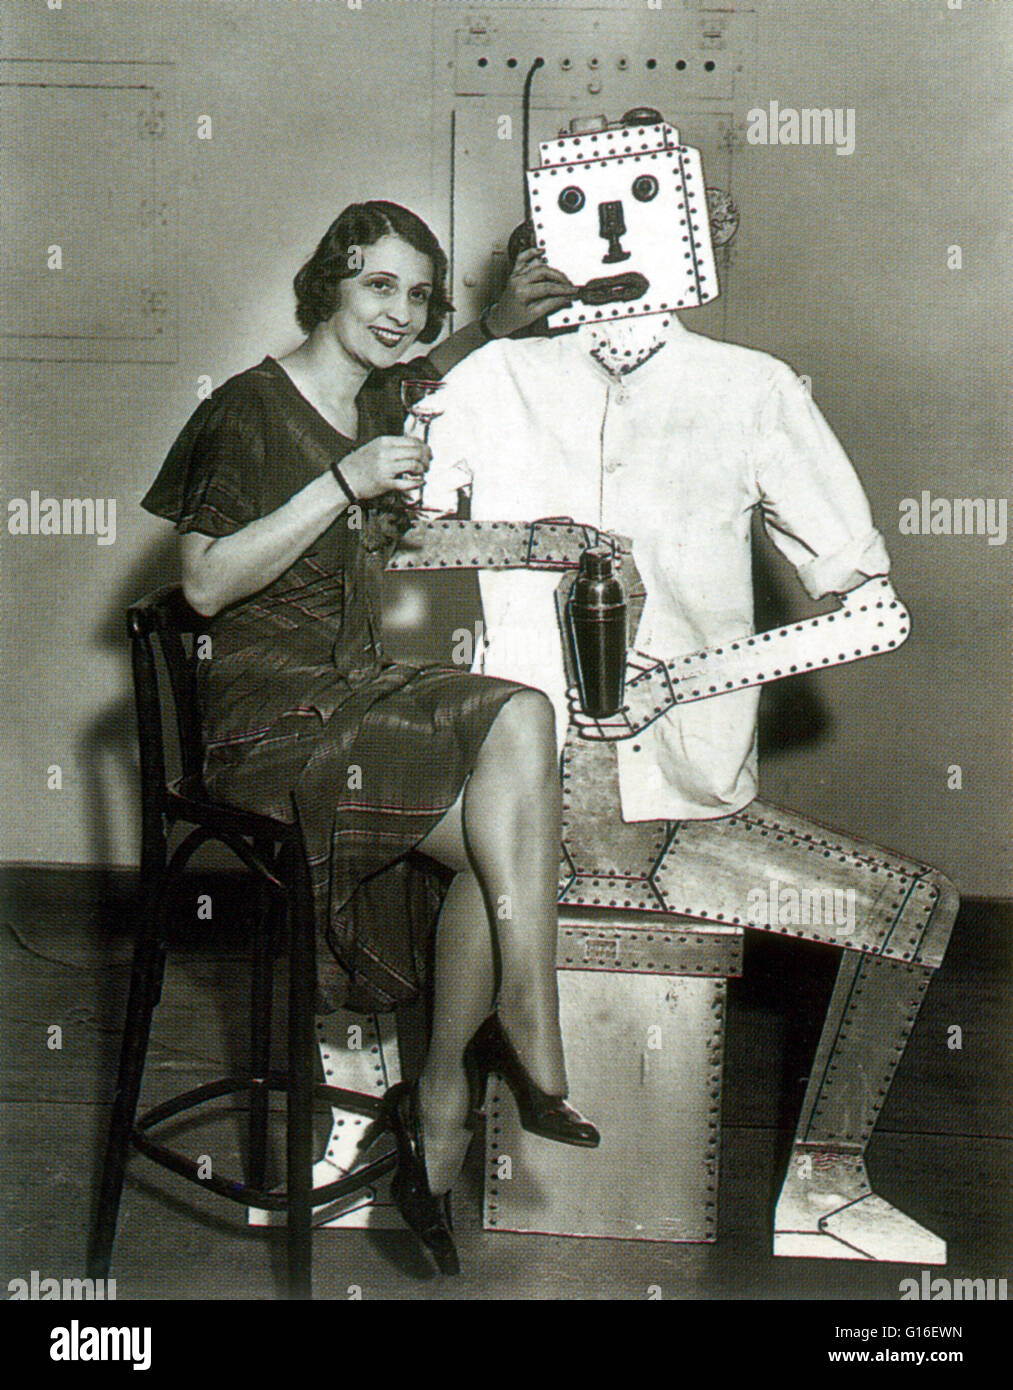 Eine junge Bar Mädchen trafen sich die Zukunft. Ein cocktail Roboter ein Barkeeper School in New York, 1933. Der Begriff "Roboter" wurde erstmals verwendet um zu kennzeichnen, dass fiktive Automaten ein 1921 R.U.R. Spielen des tschechischen Schriftstellers Karel Capek.  Im Jahr 1928, eines der ersten humanoiden Robotern wa Stockfoto